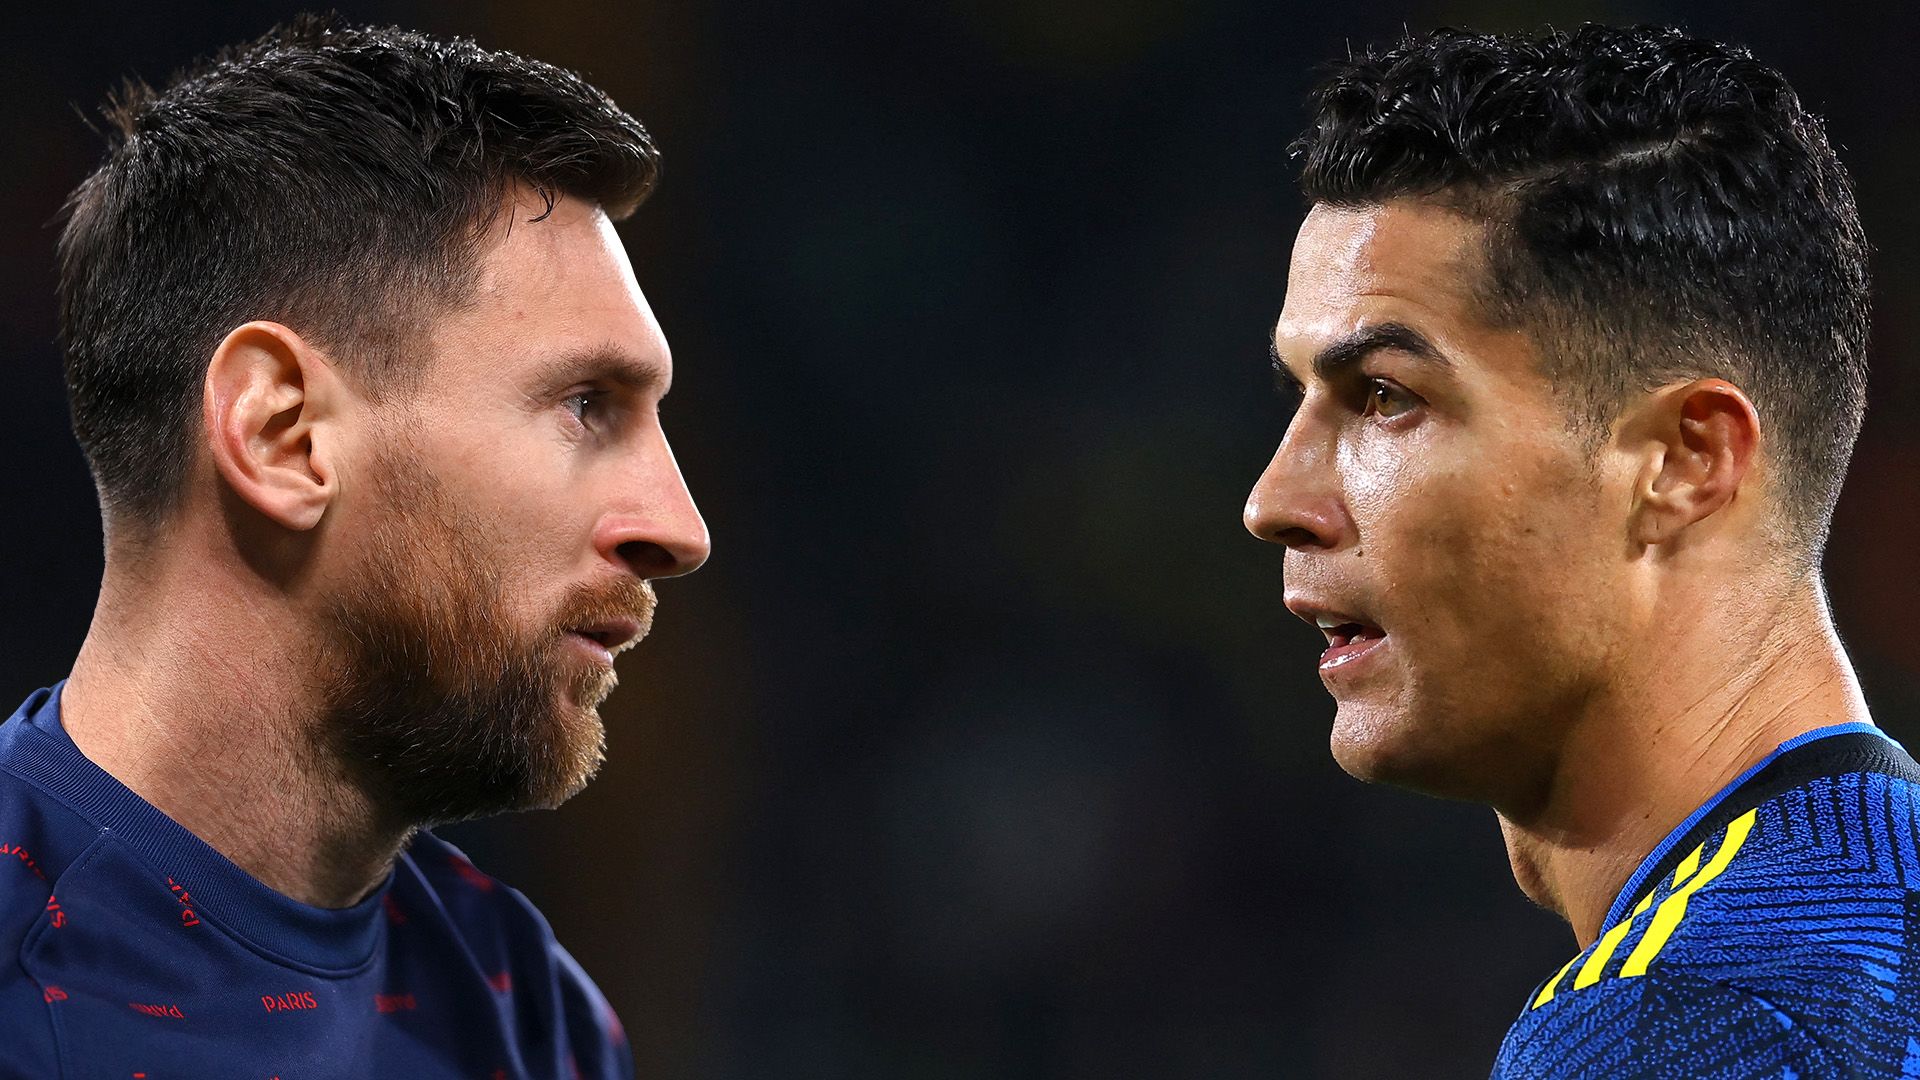 Messi vs Ronaldo... Again?